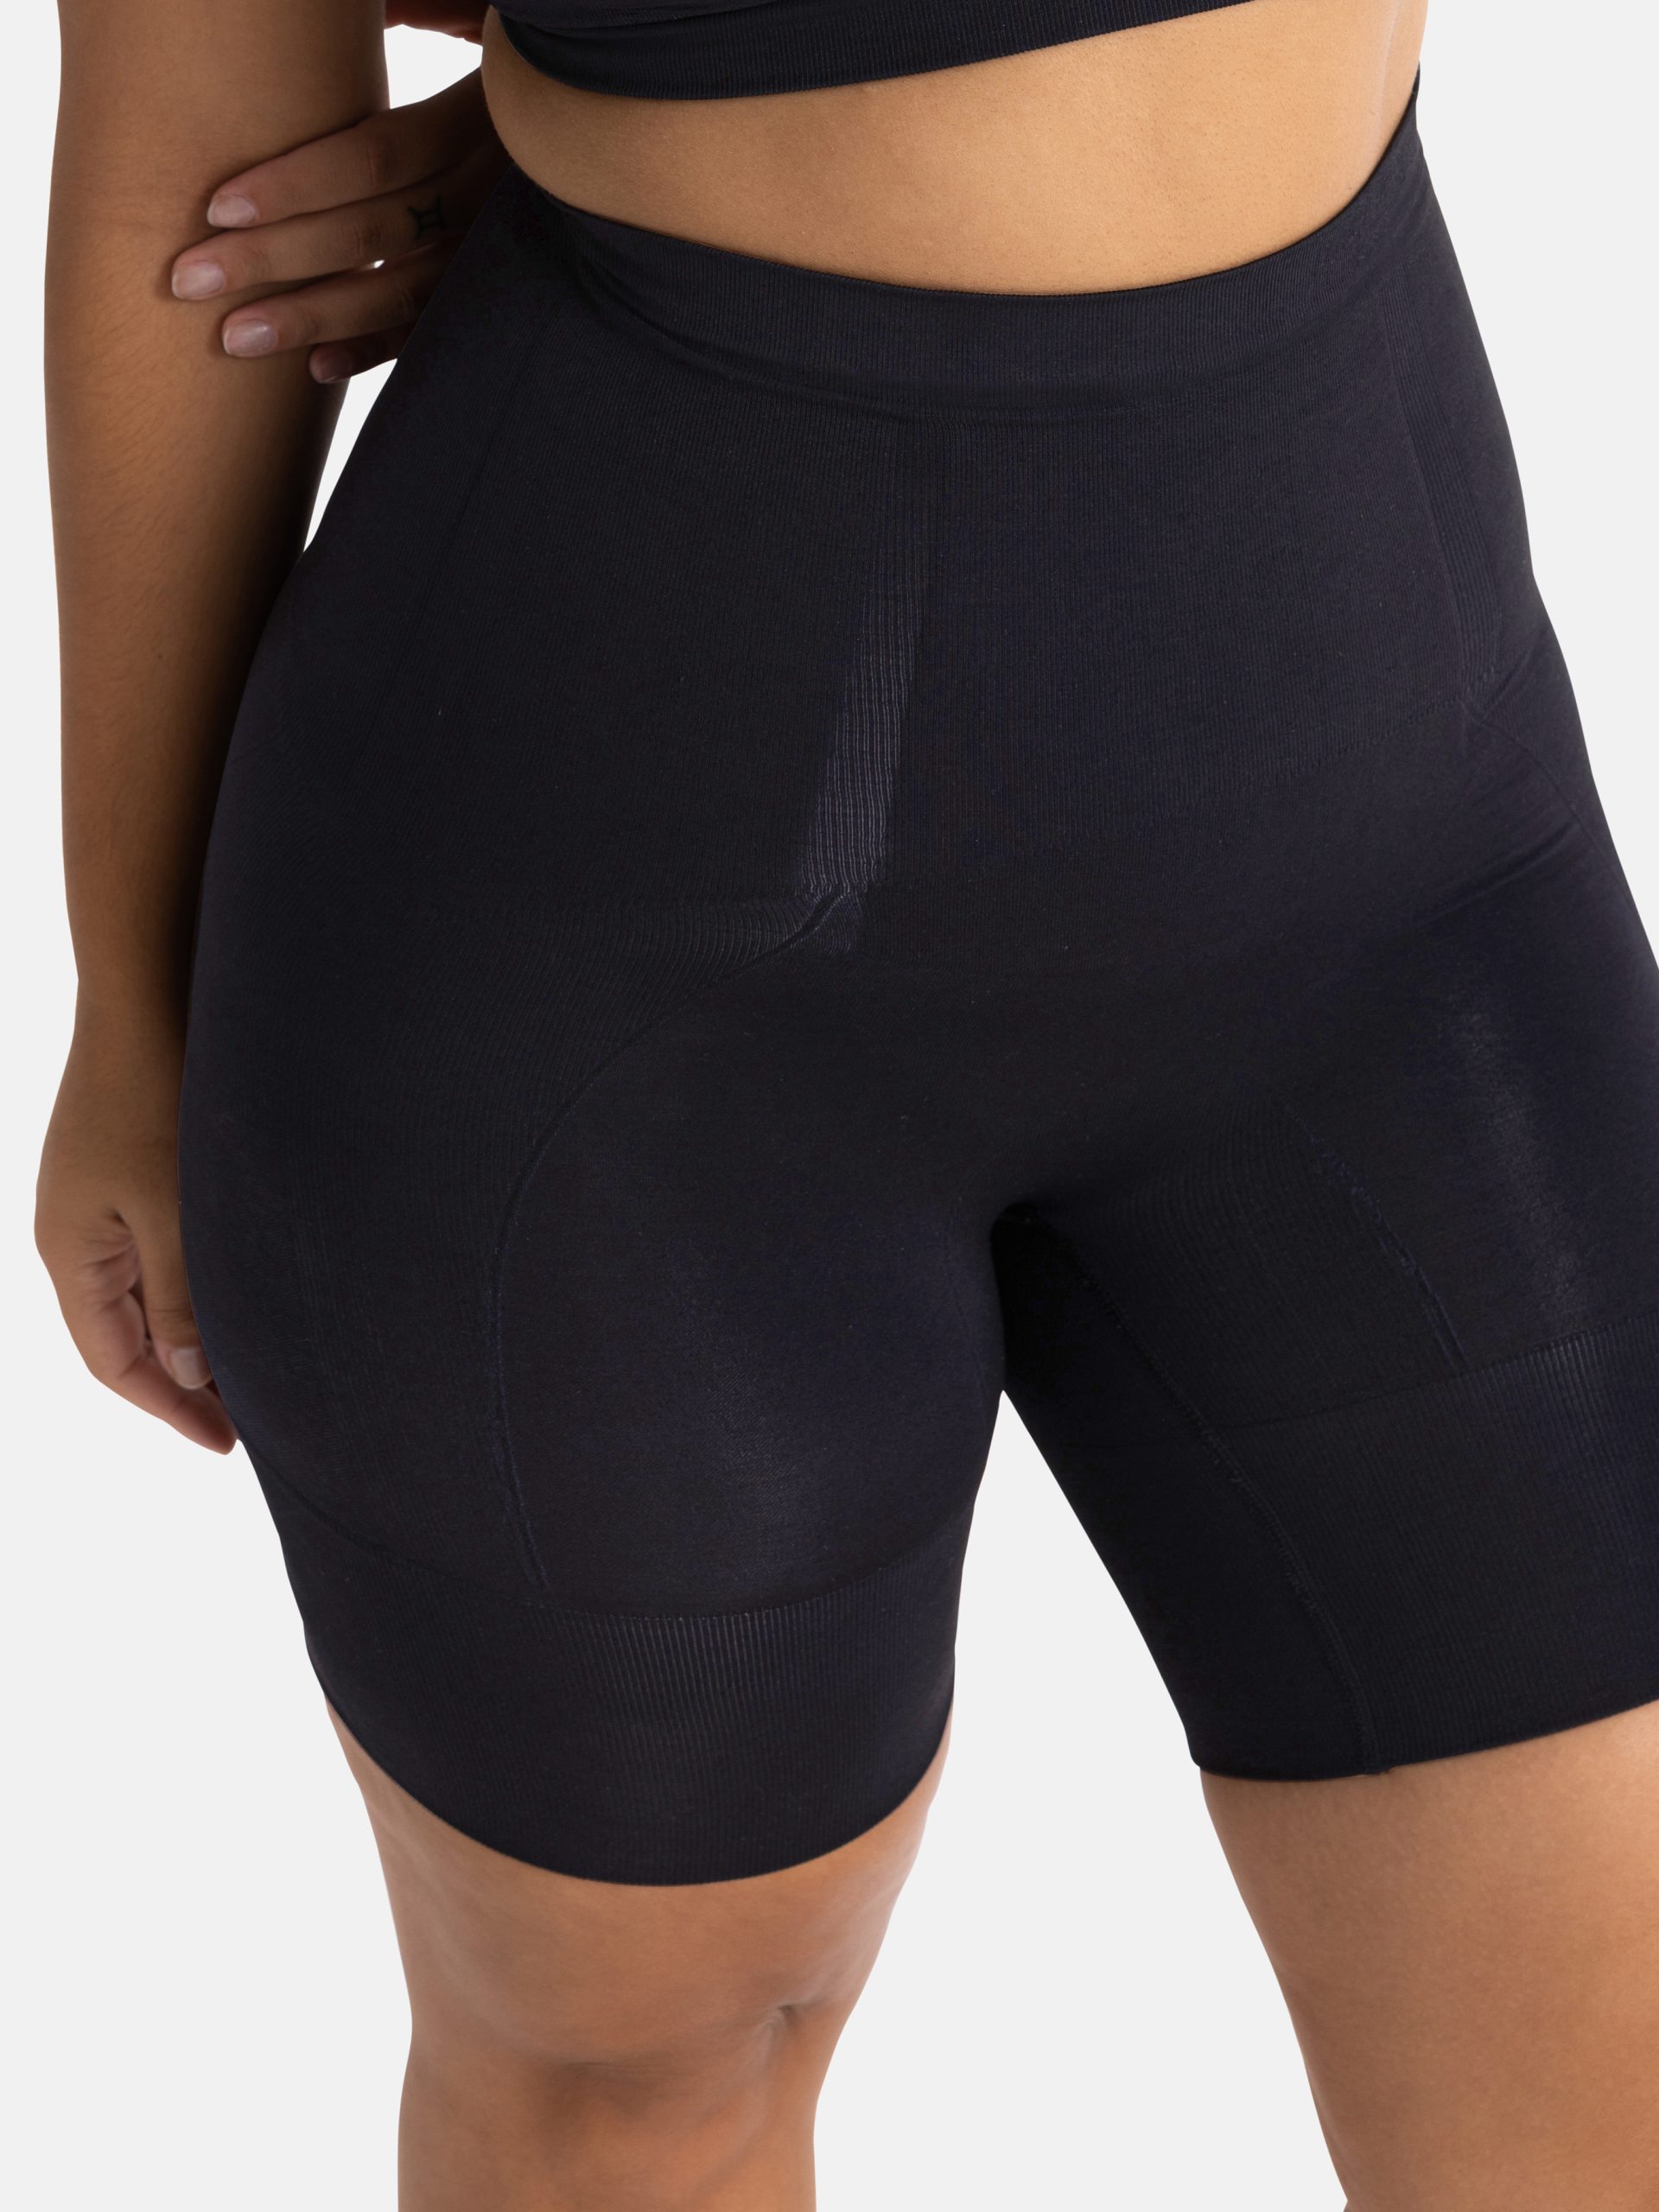 Dorina Absolute Sculpt seamless high control high-waist shorts in